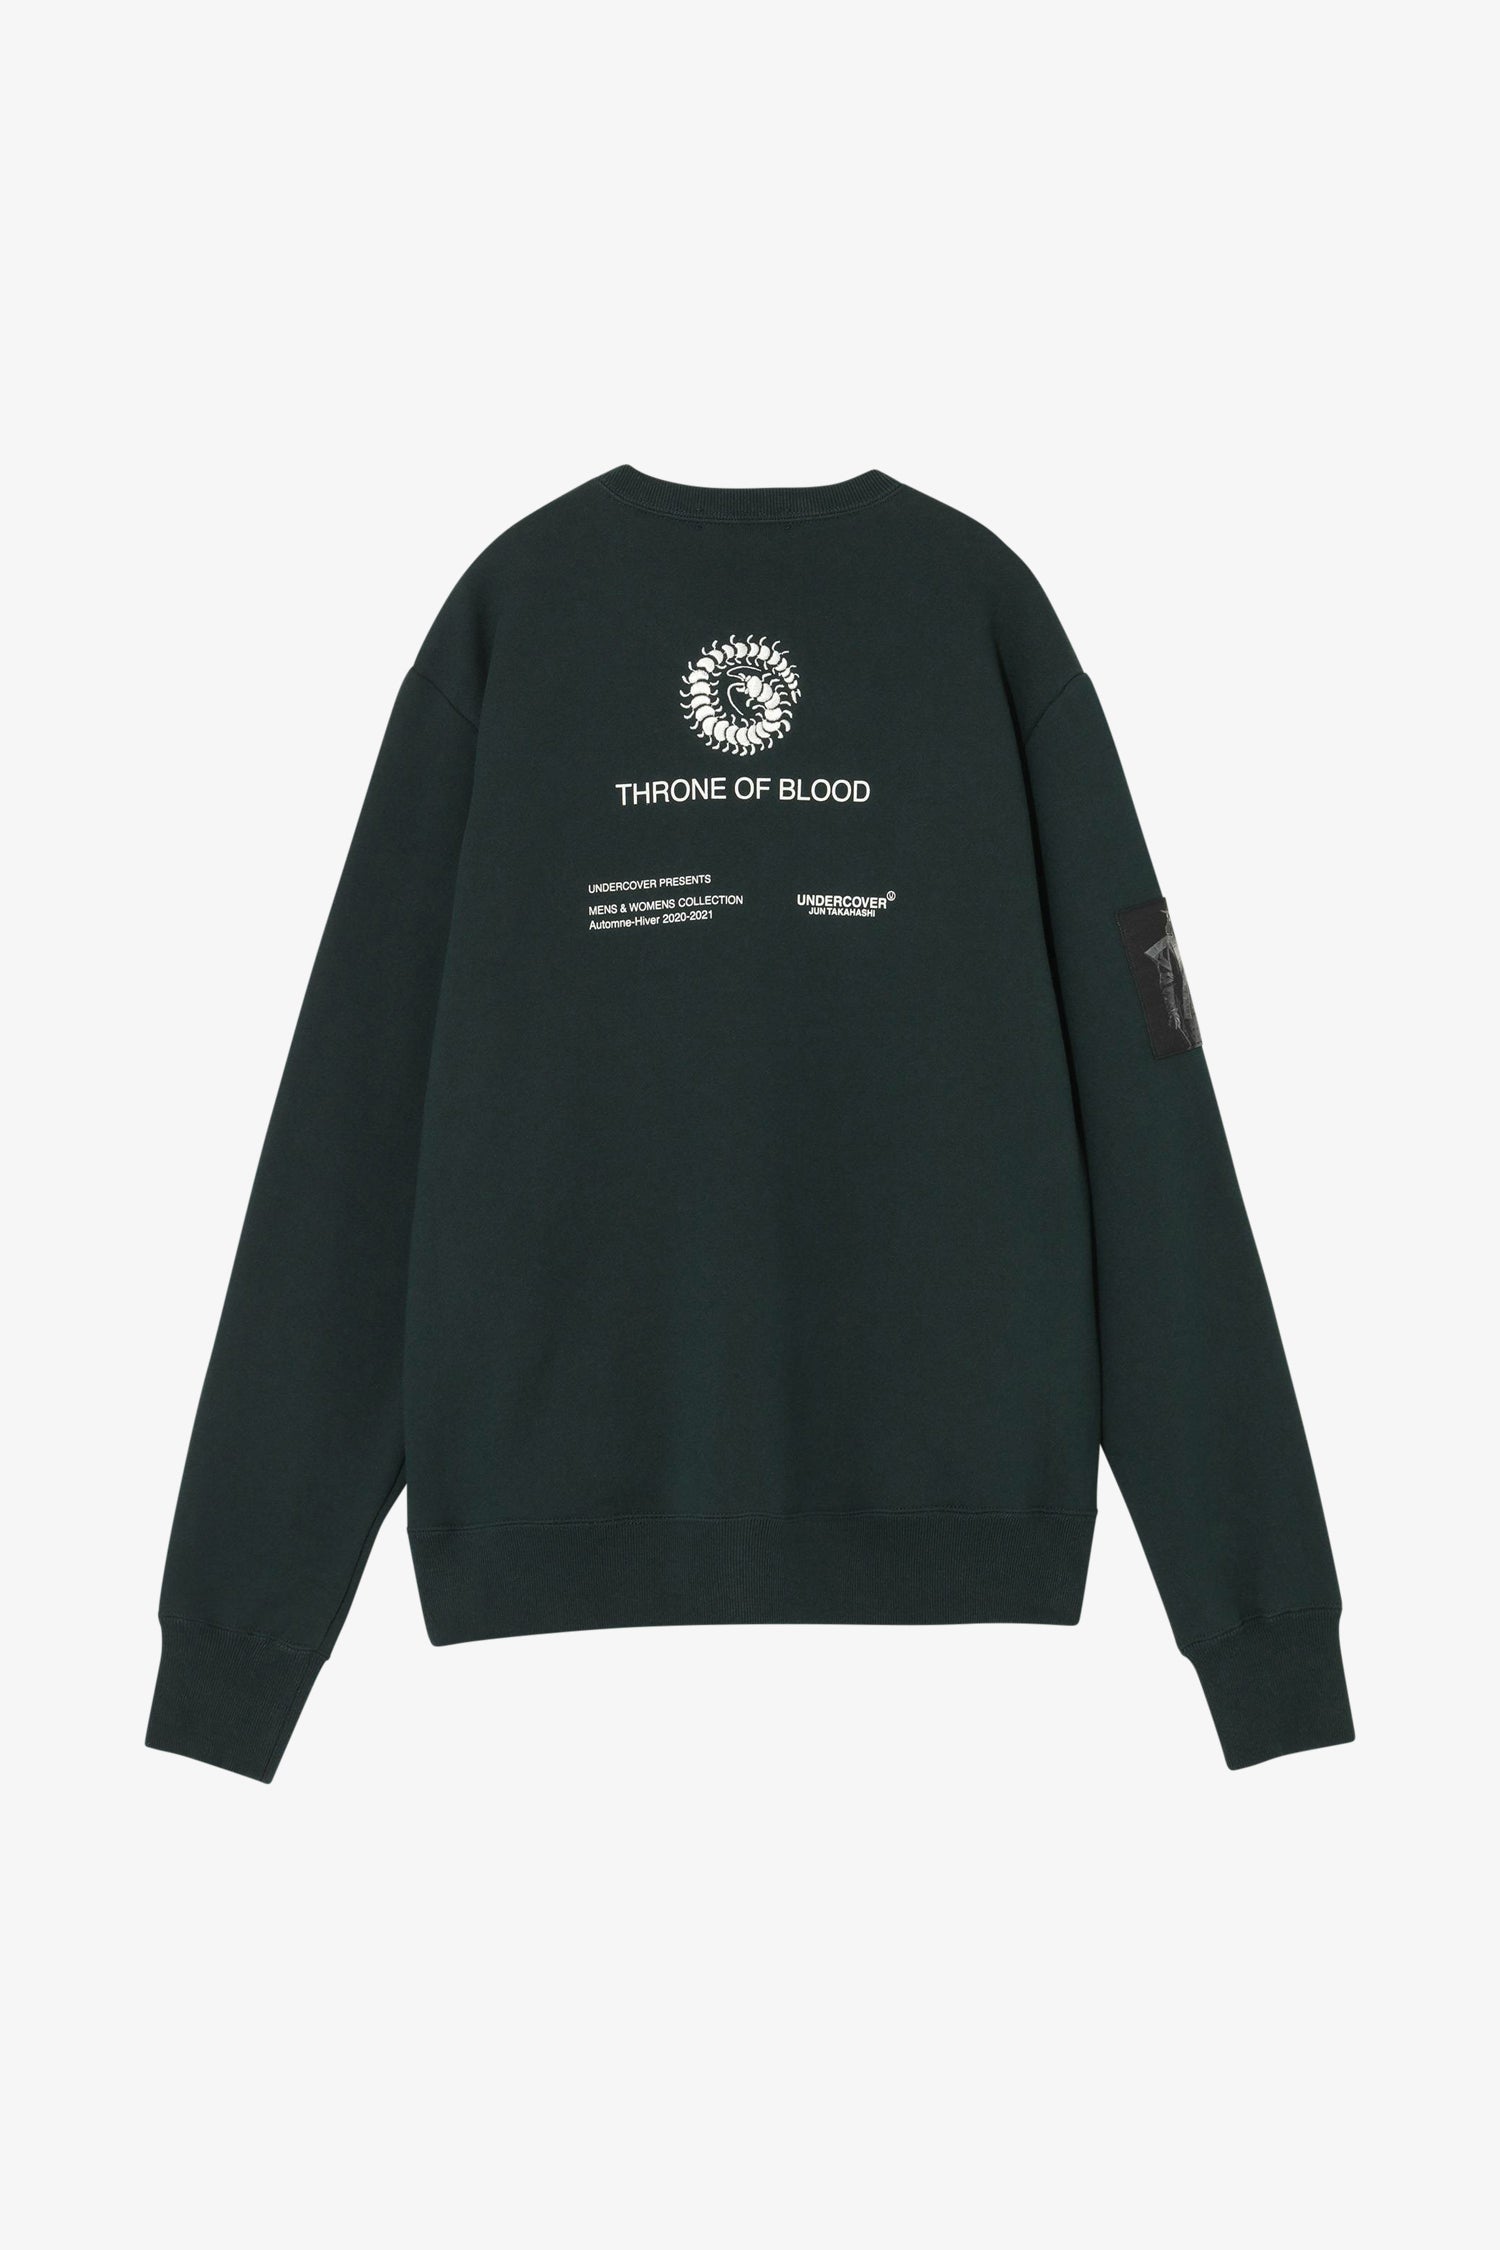 Selectshop FRAME - UNDERCOVER Arrows Sweatshirt Sweatshirt Dubai